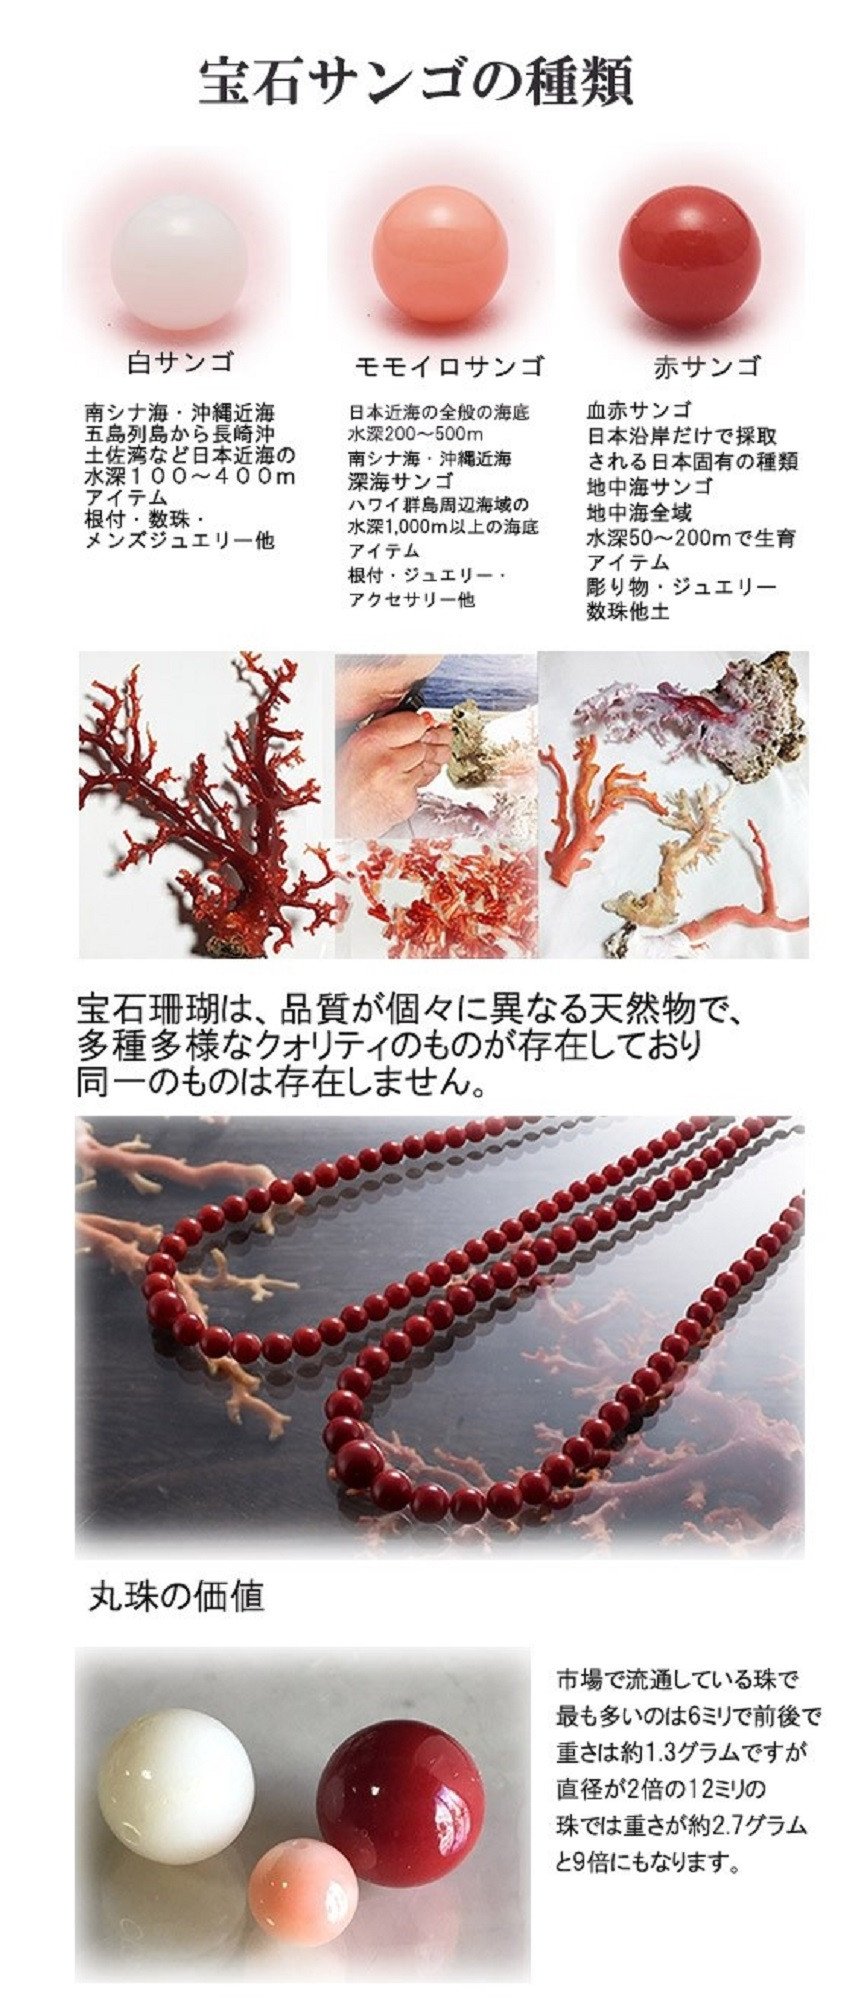 天然宝石珊瑚】赤珊瑚丸玉ネックレス | JTBのふるさと納税サイト [ふるぽ]